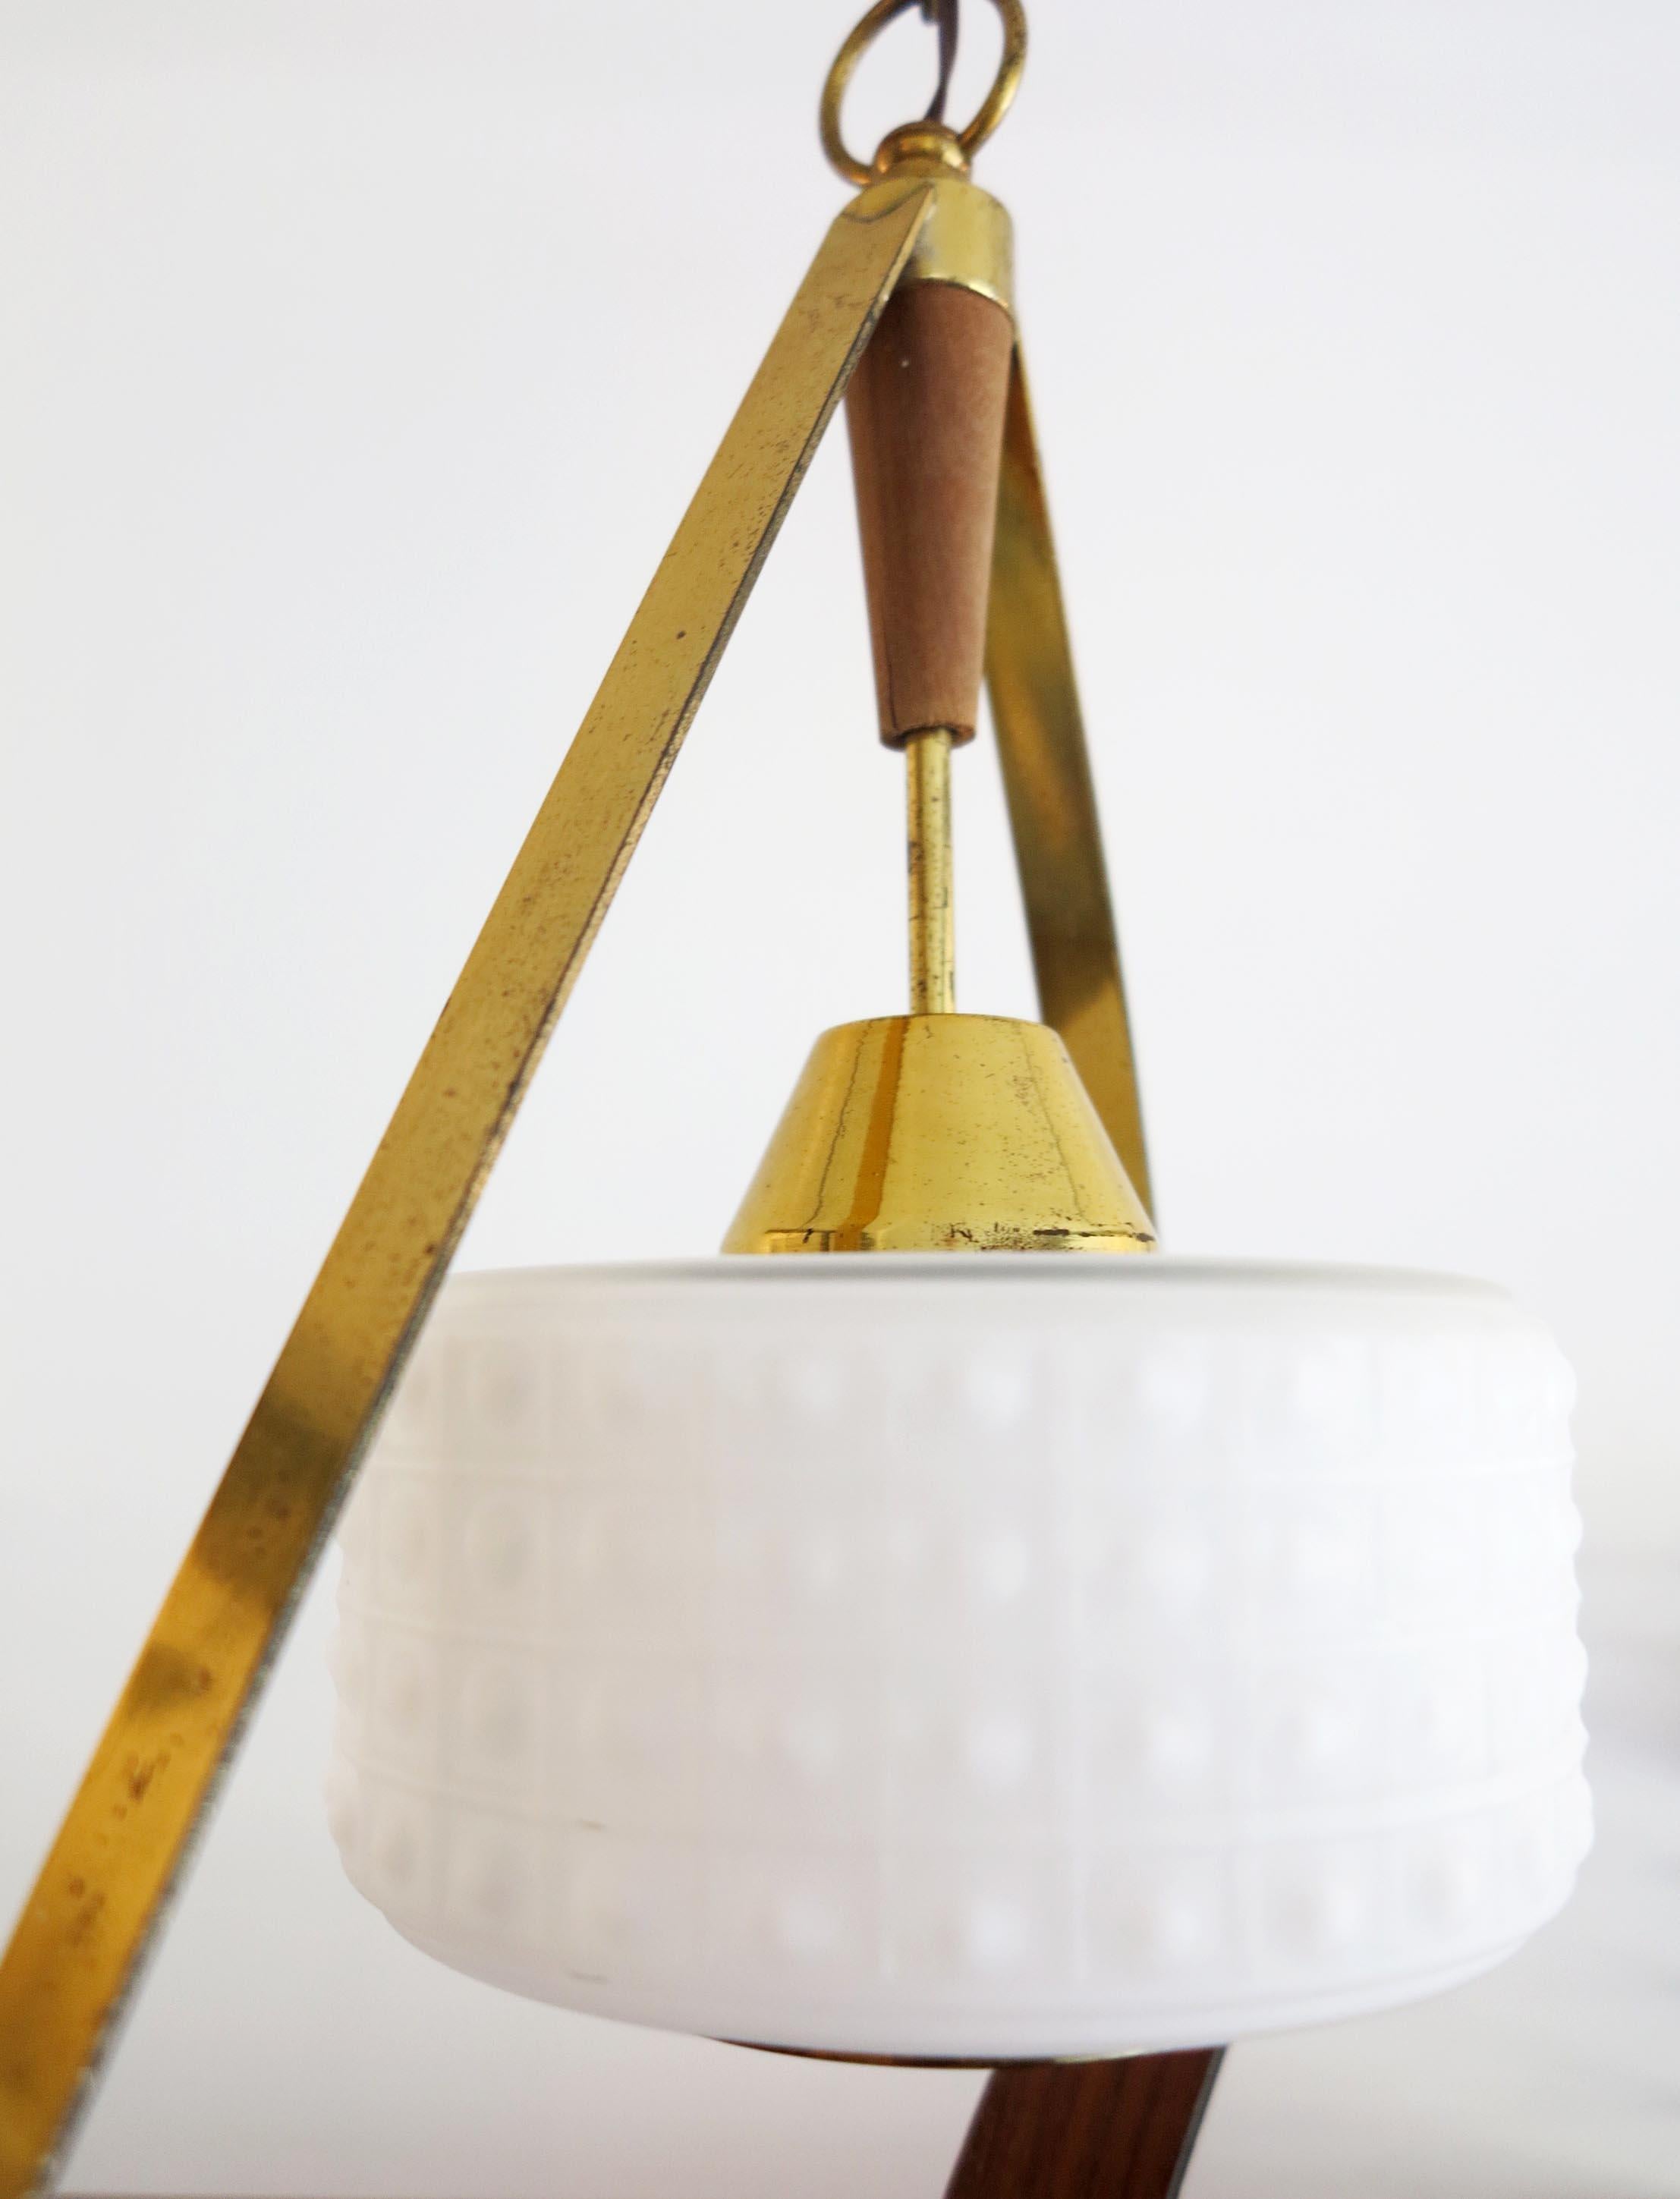 Scandinavian Pendant or Ceiling Lamp in Teak Wood Opaline Glass & Brass, 1950s For Sale 4